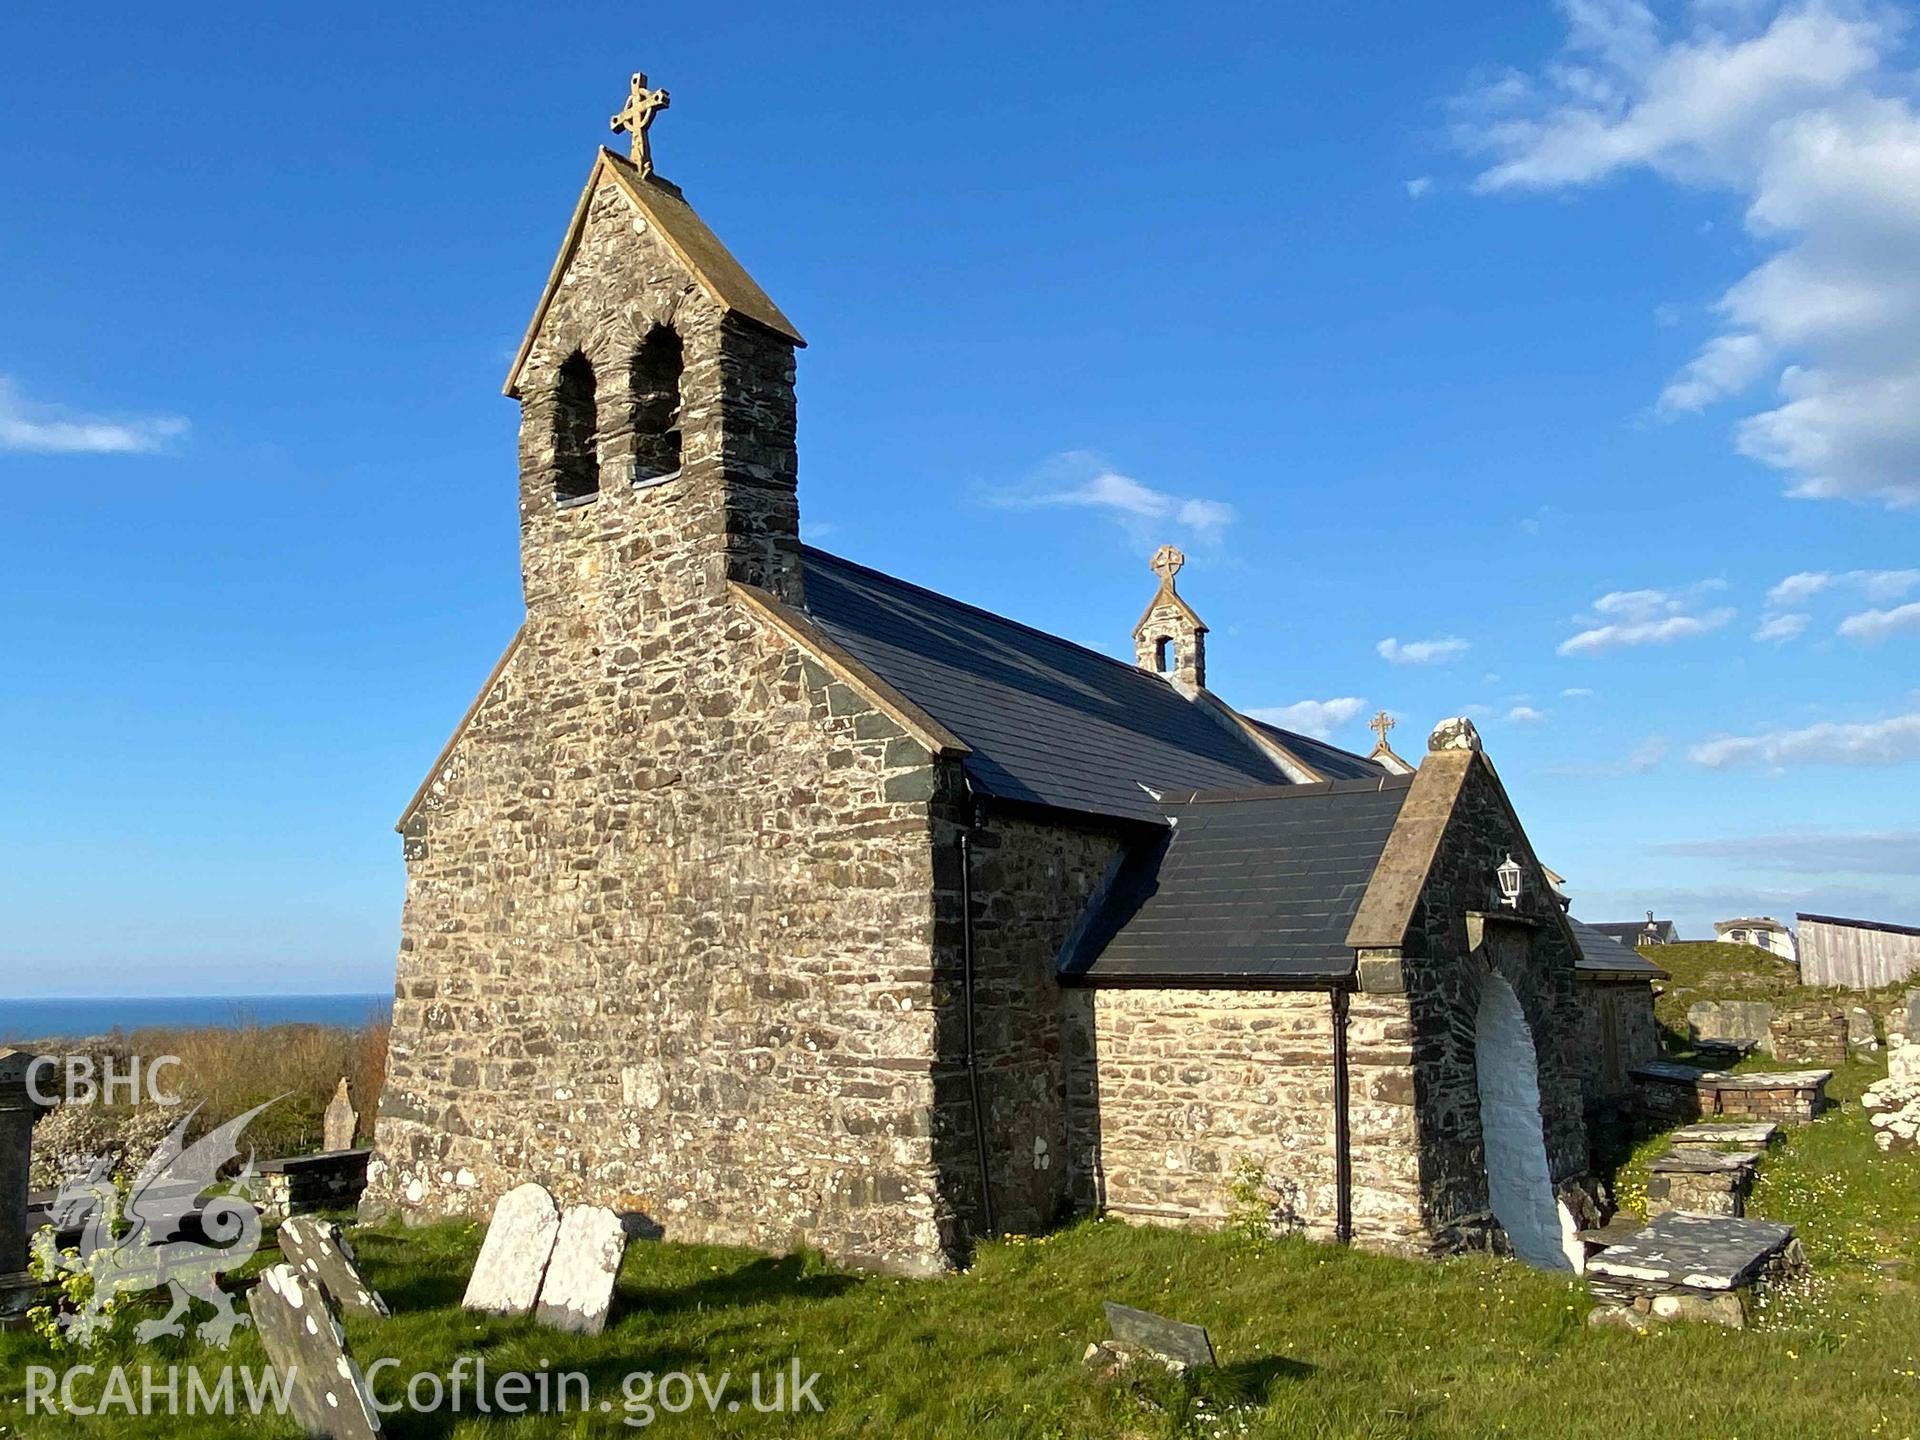 Digital photograph of St Gwyndaf's Church, Llanwnda, produced by Paul Davis in 2020